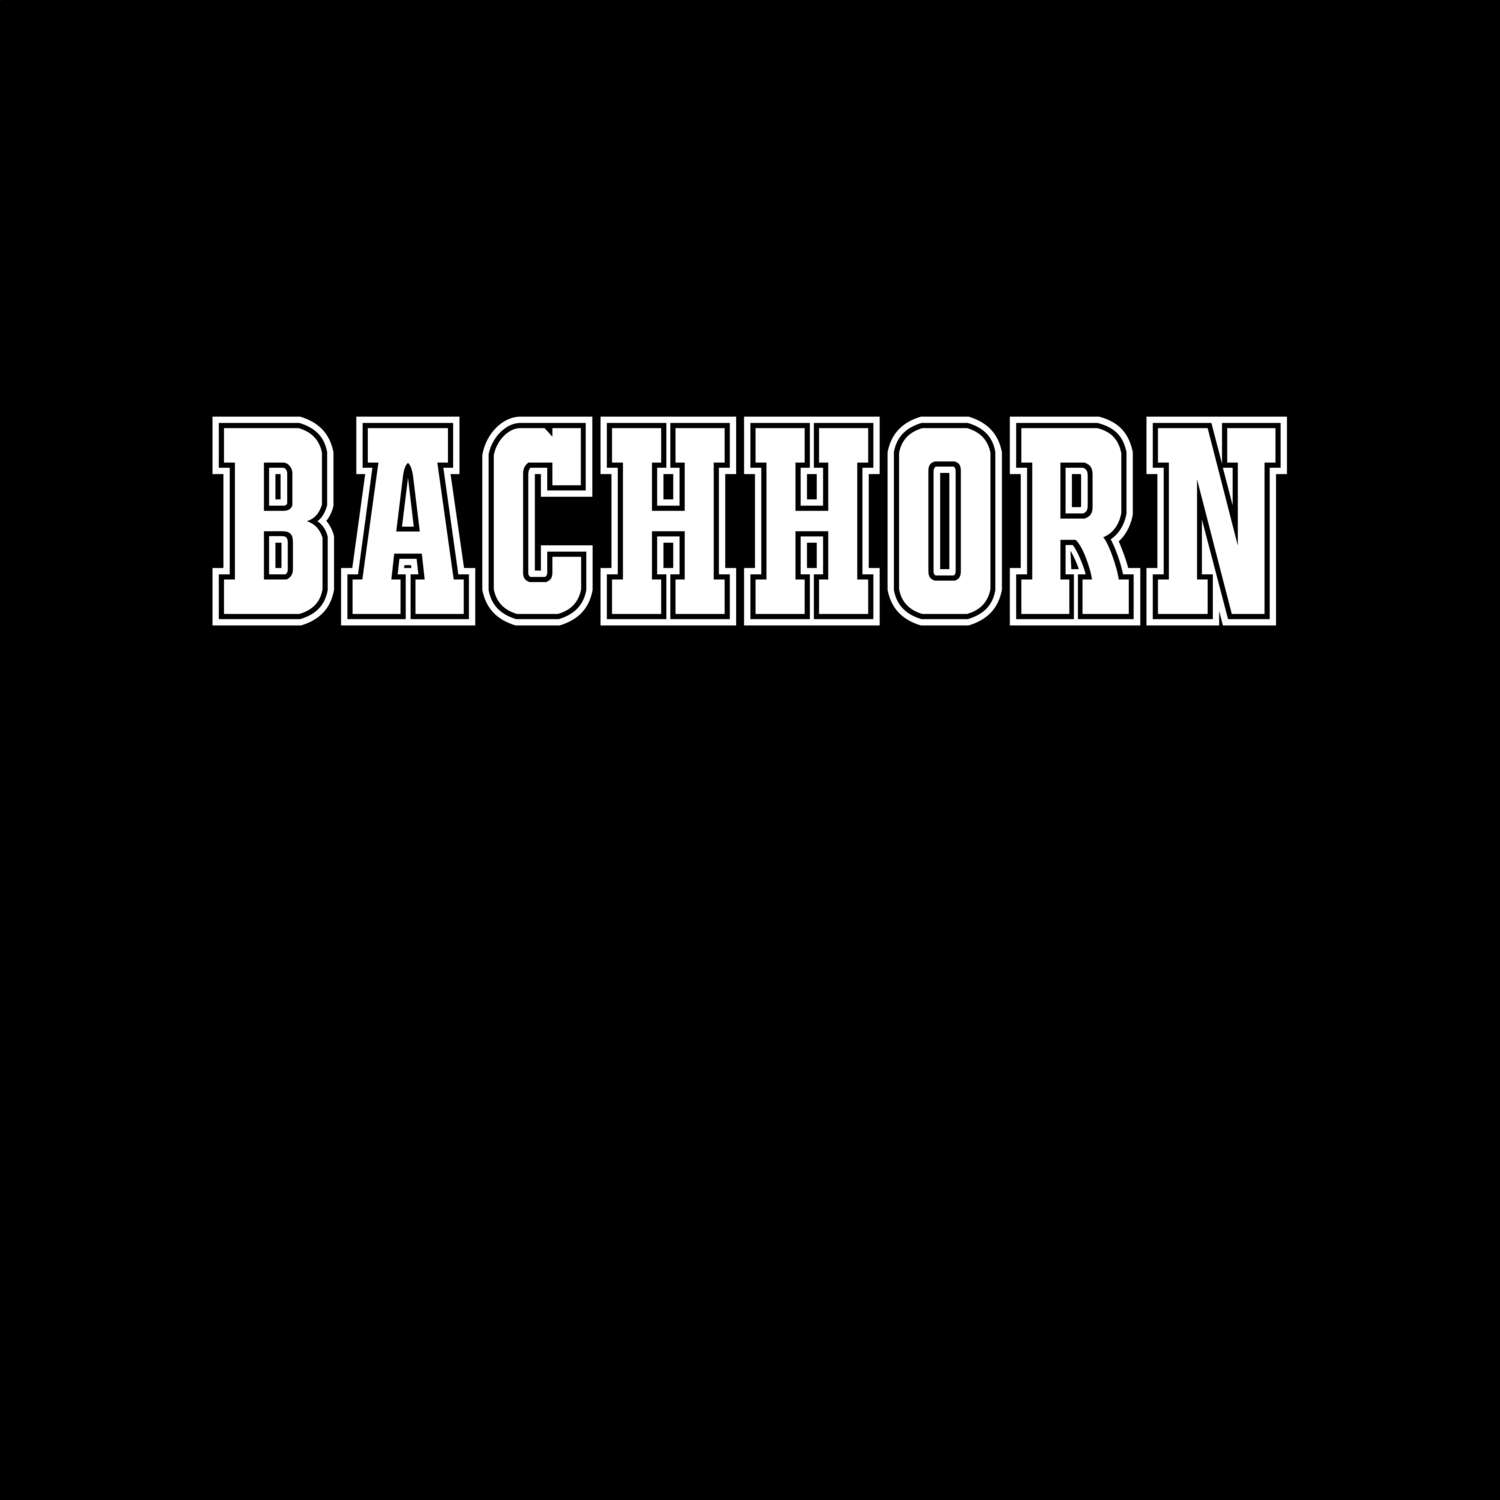 Bachhorn T-Shirt »Classic«